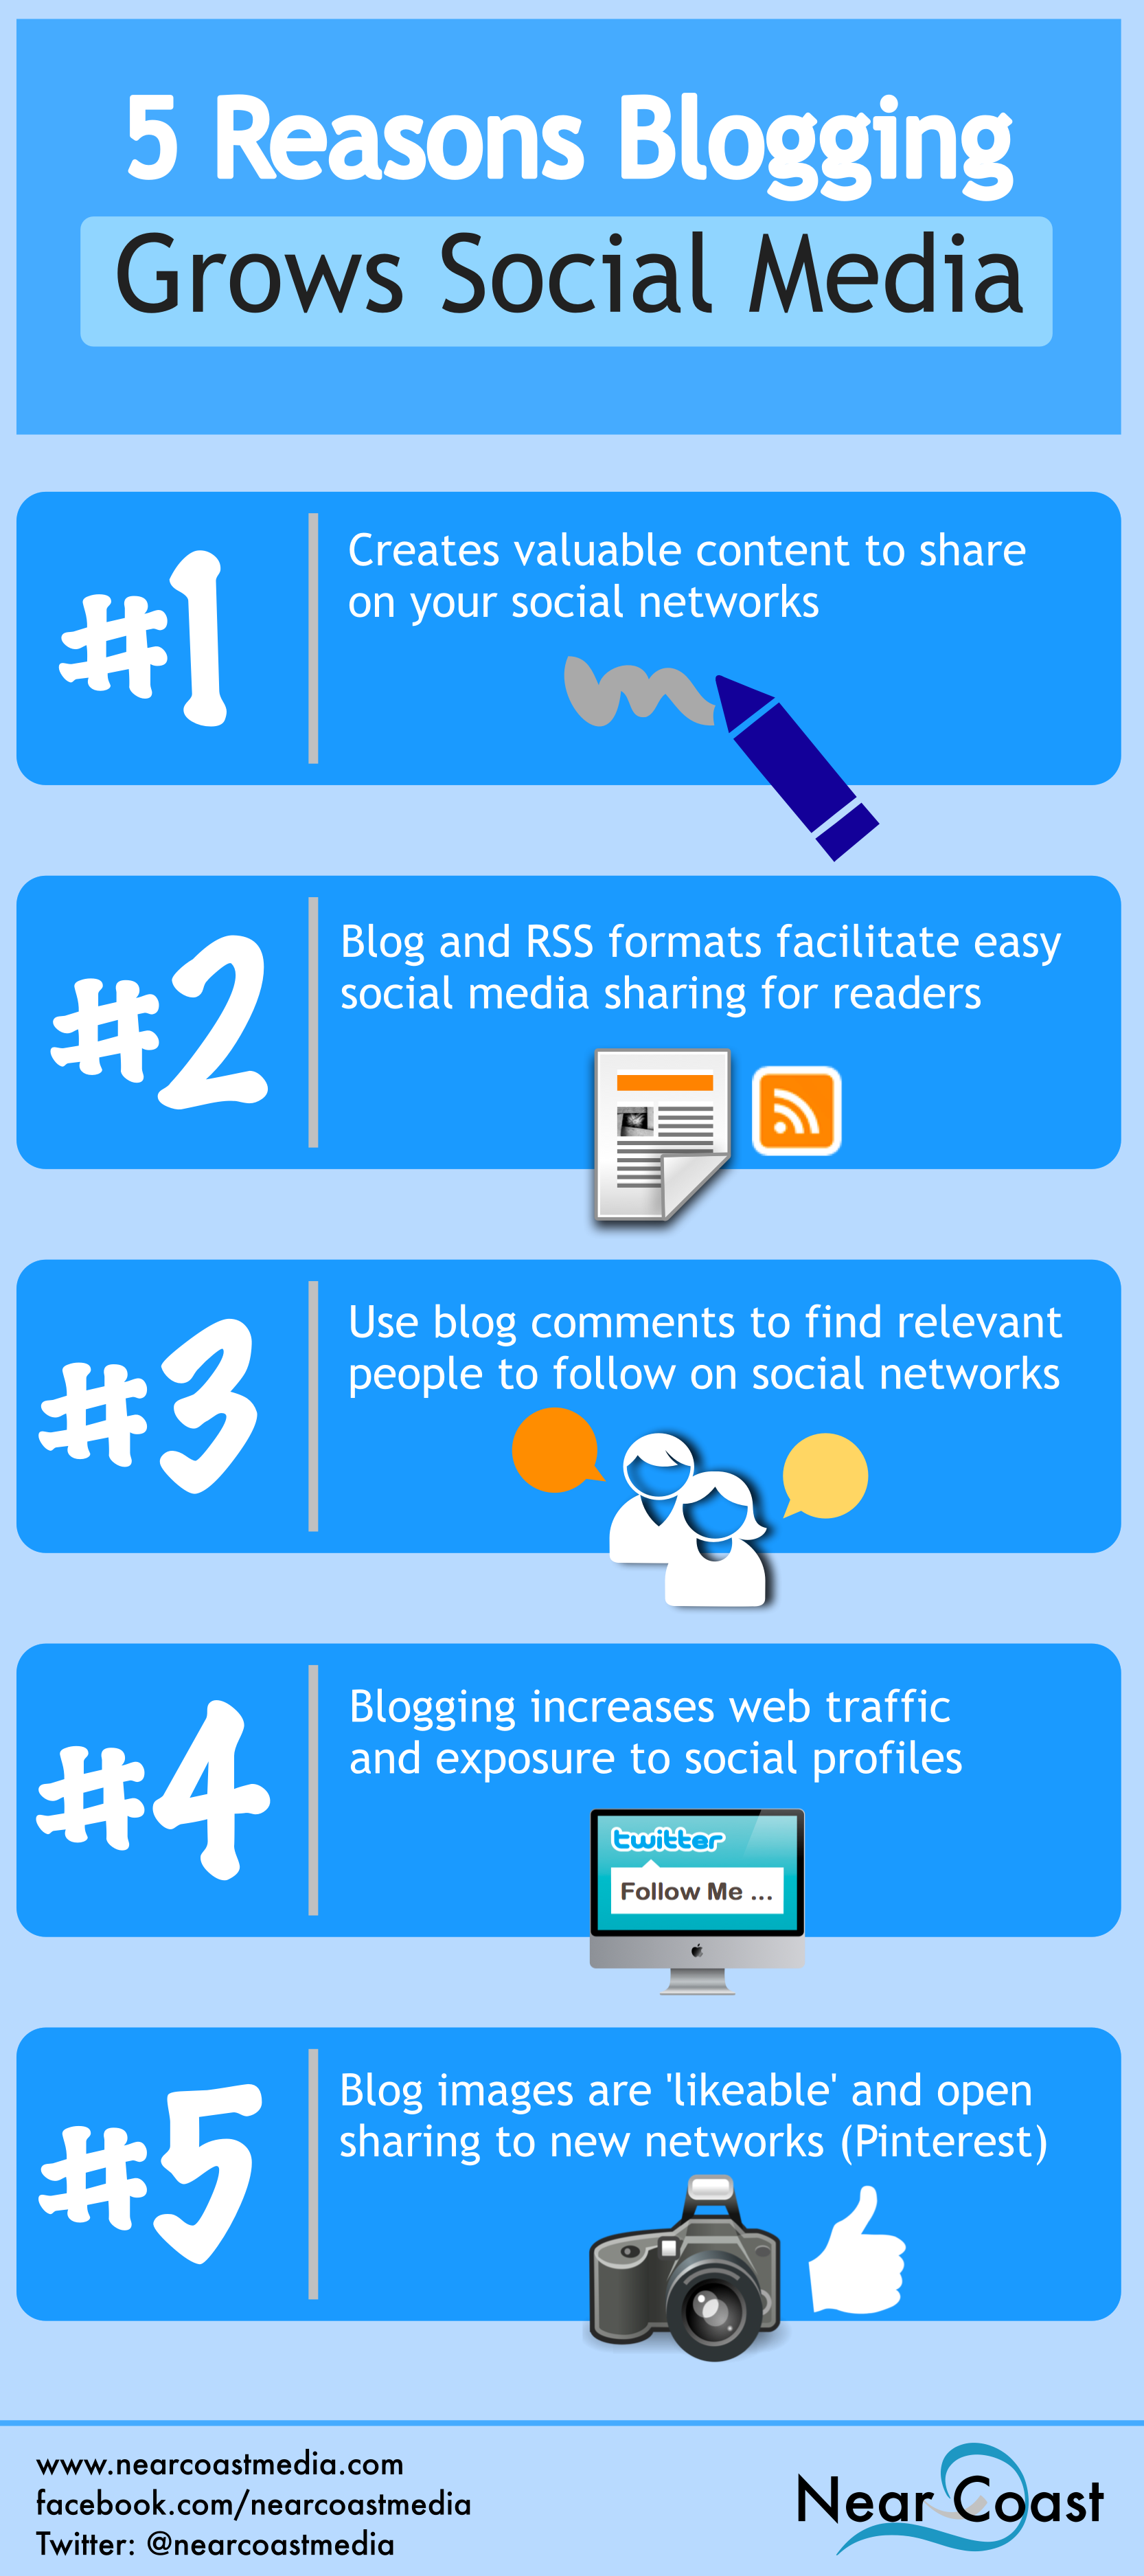 5 Reasons Blogging Grows Social Media